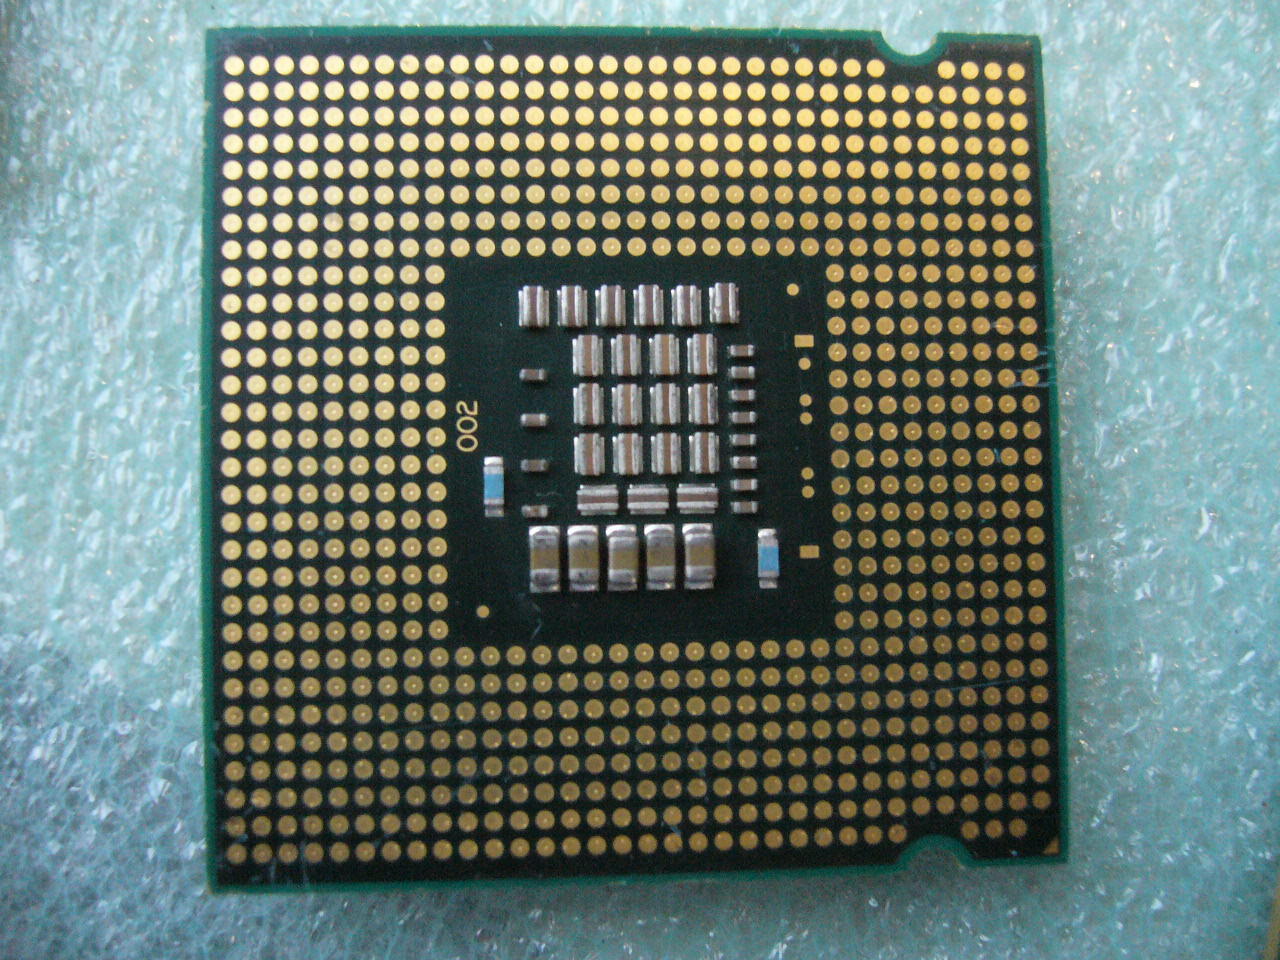 QTY 1x INTEL Core 2 Duo E8400 CPU 3.0GHz 6MB/1333Mhz LGA775 SLB9J SLAPL - zum Schließen ins Bild klicken